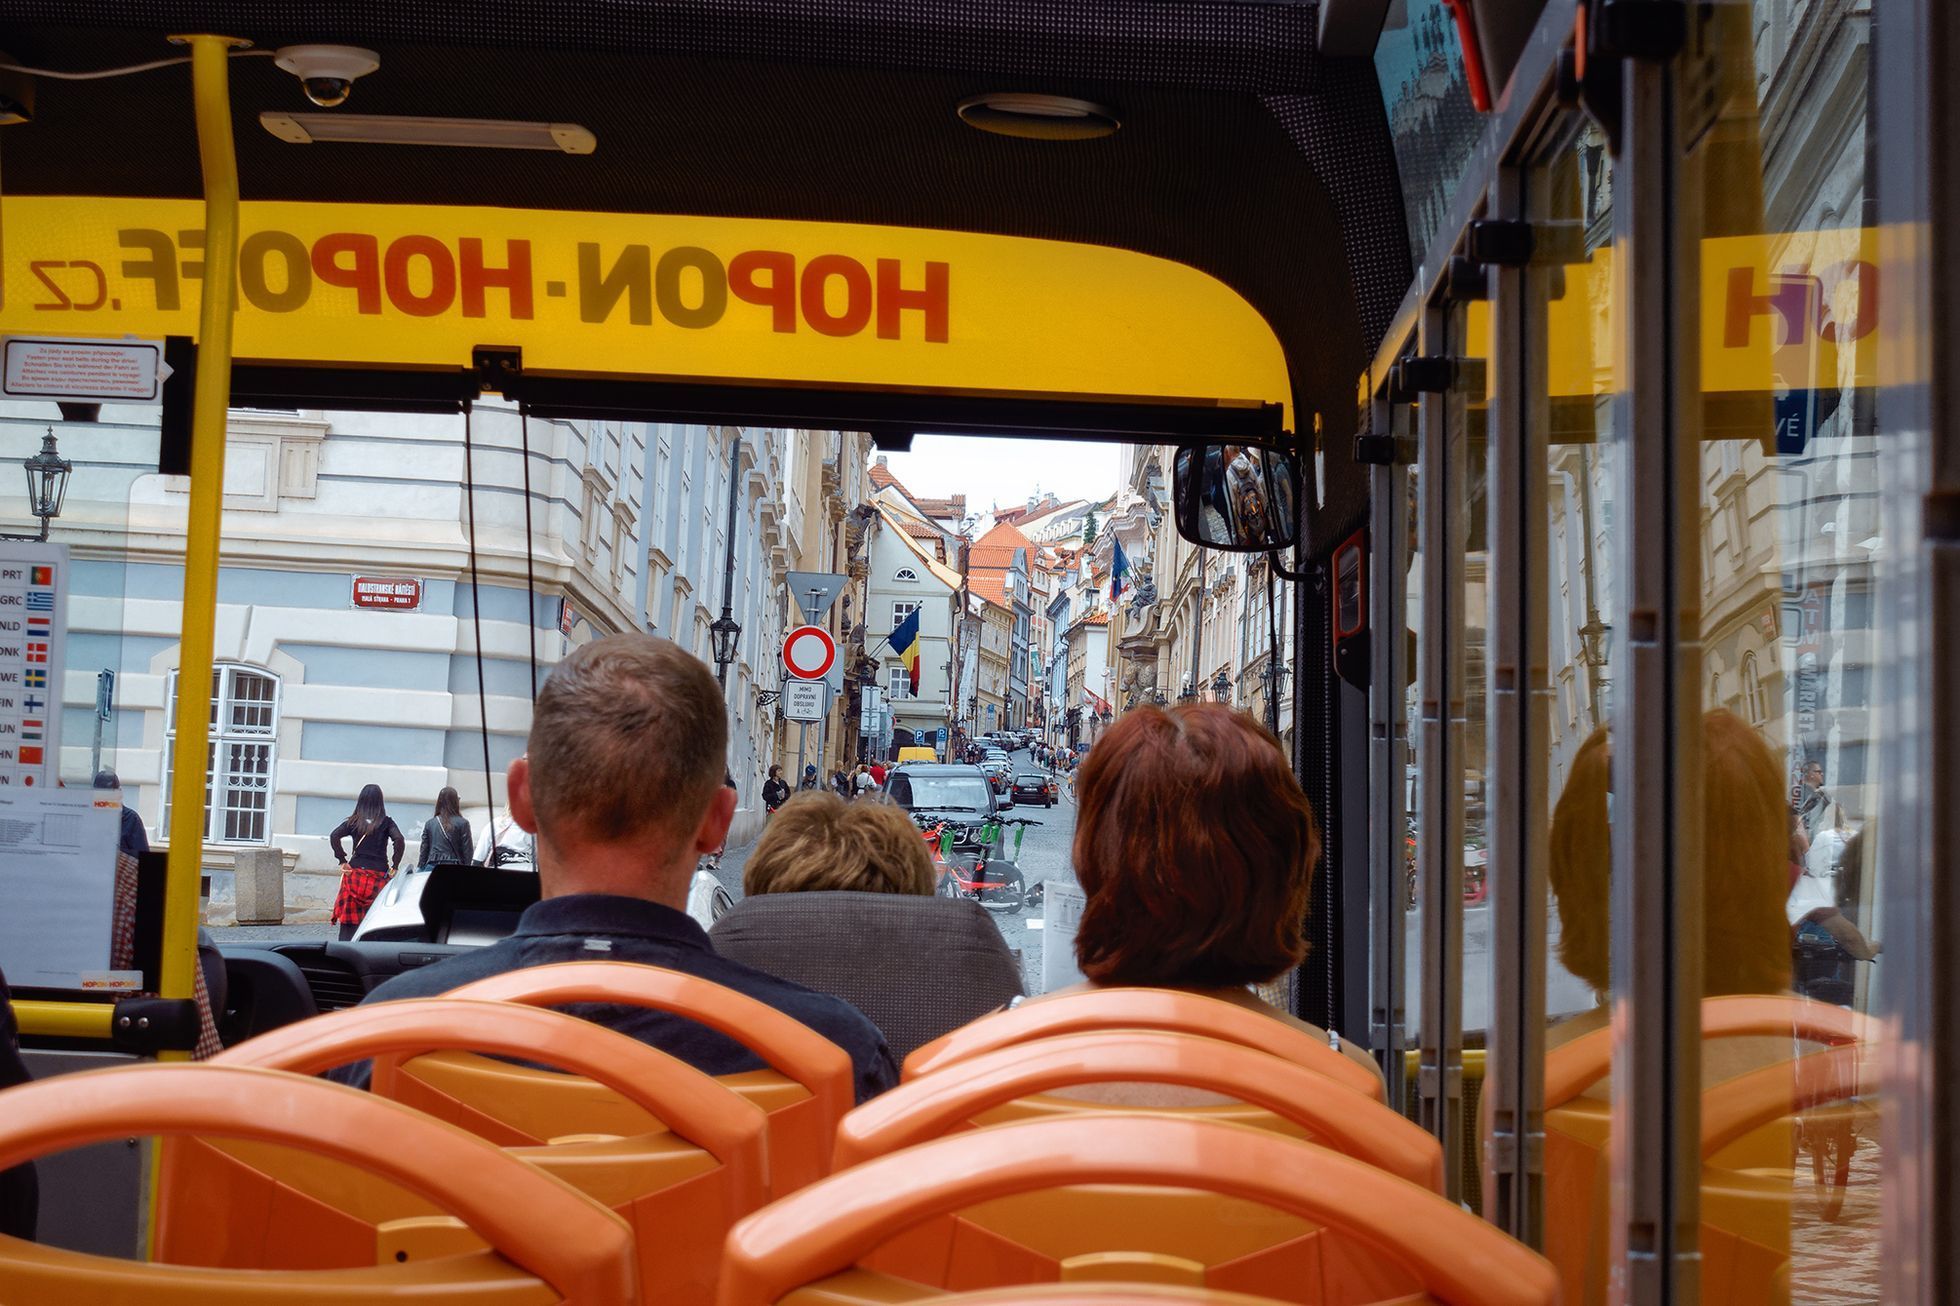 Praha viděná z Hop On busu: krásné památky, Kafka, pivo, rum i sexshopy